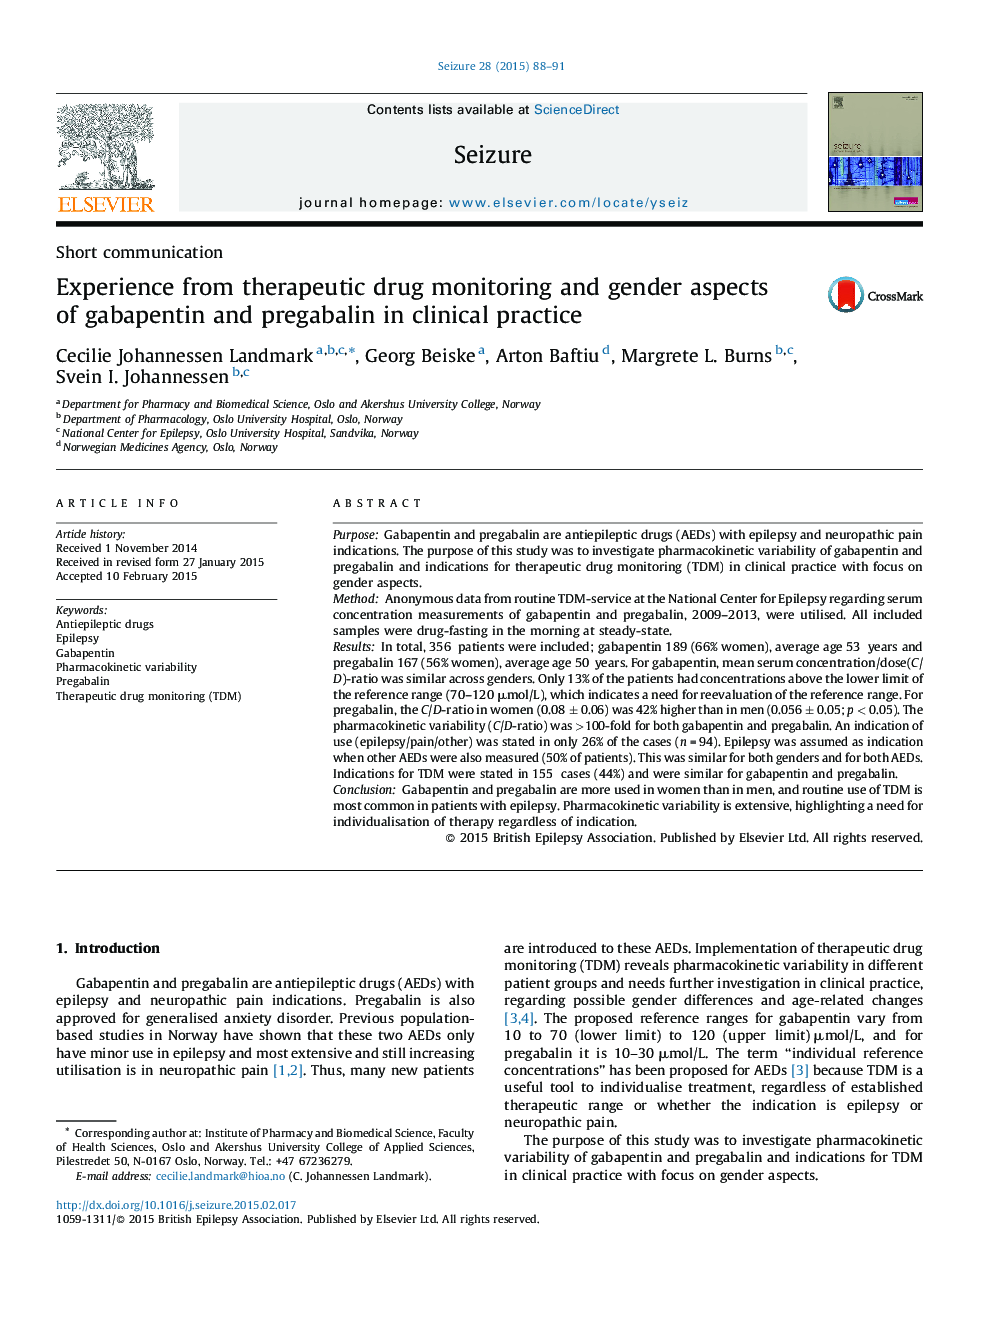 تجربه درمانی از نظارت داروهای درمانی و جنبه های جنسیتی گاباپنتین و پره گابالین در عمل بالینی 